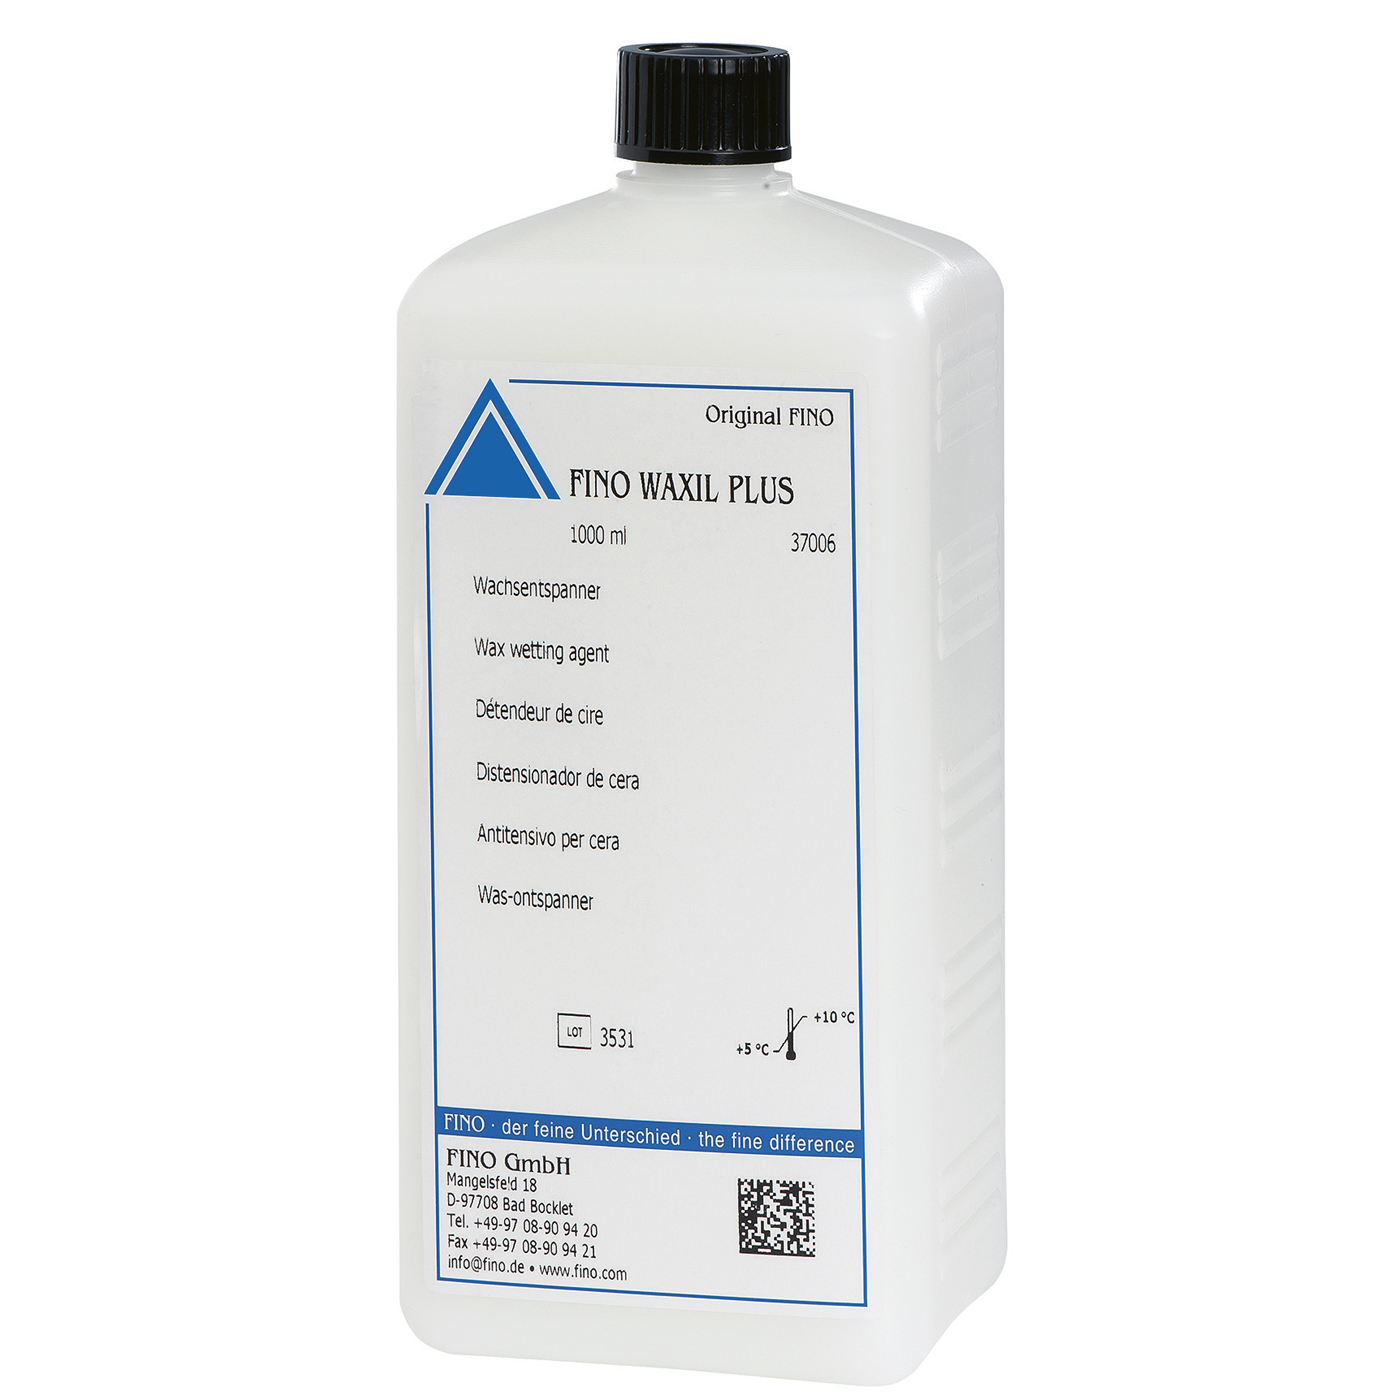 FINO WAXIL PLUS Wax Wetting Agent - 1000 ml